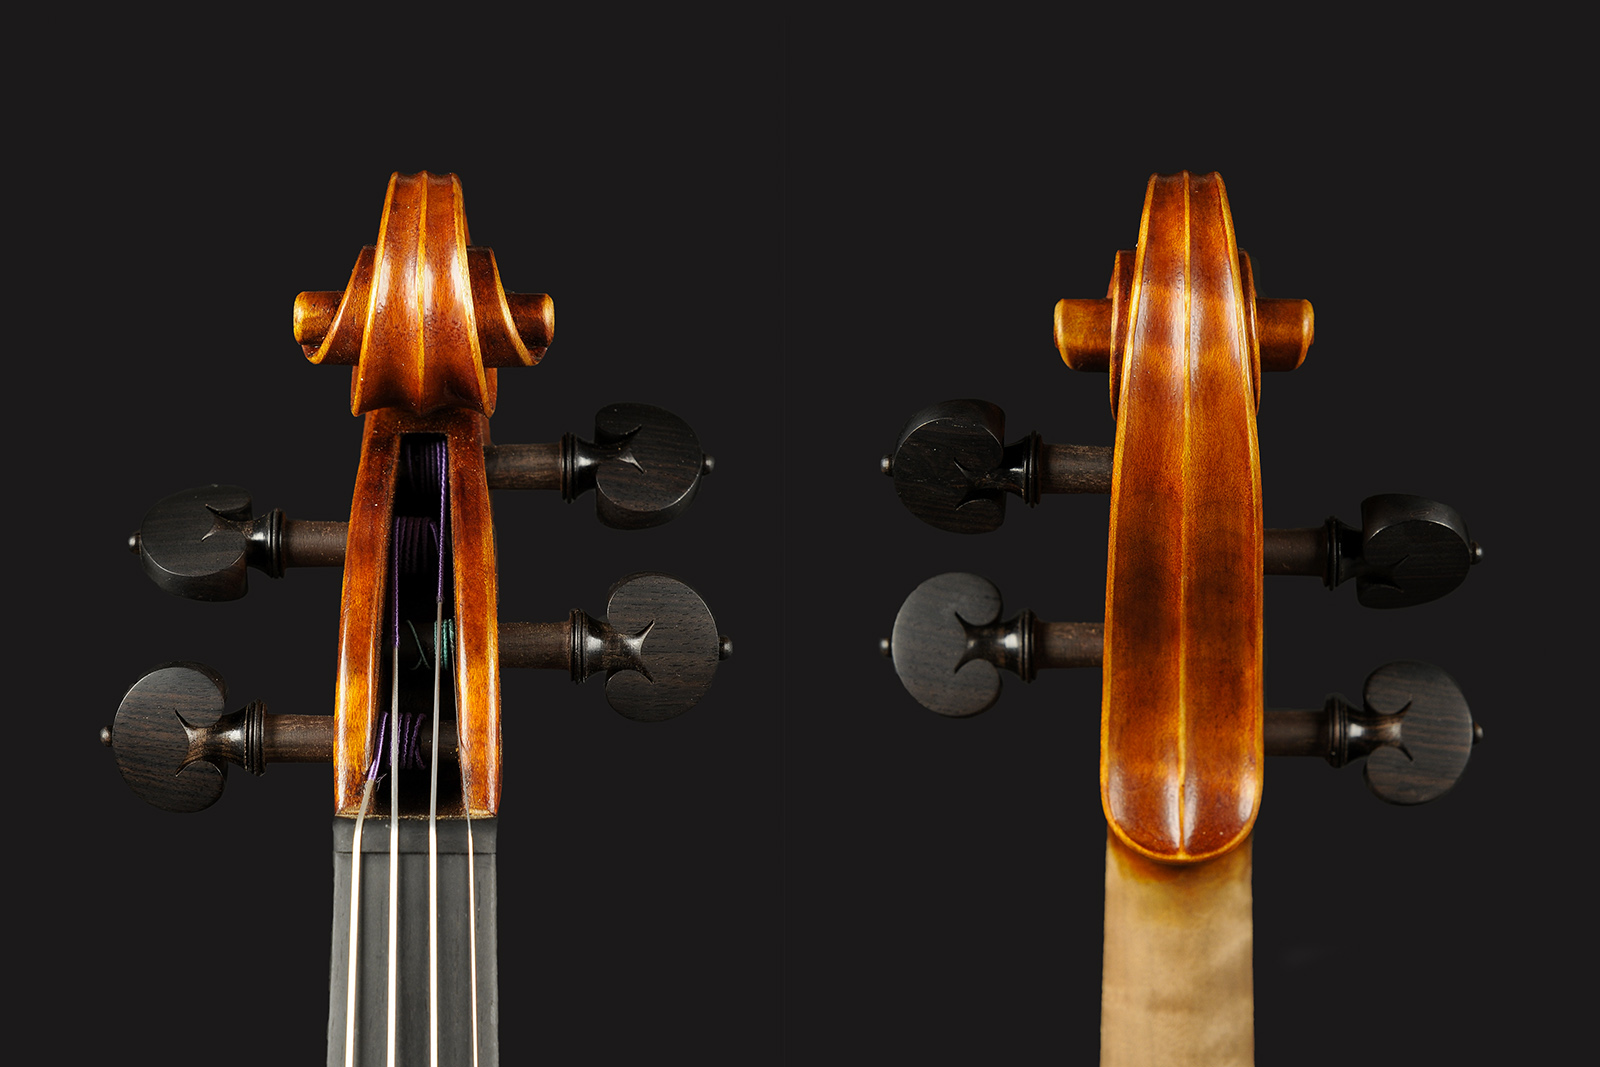 Stradivari & Del Gesù Stradivari & Mod. Del Gesù “The Twins“ - Image 3